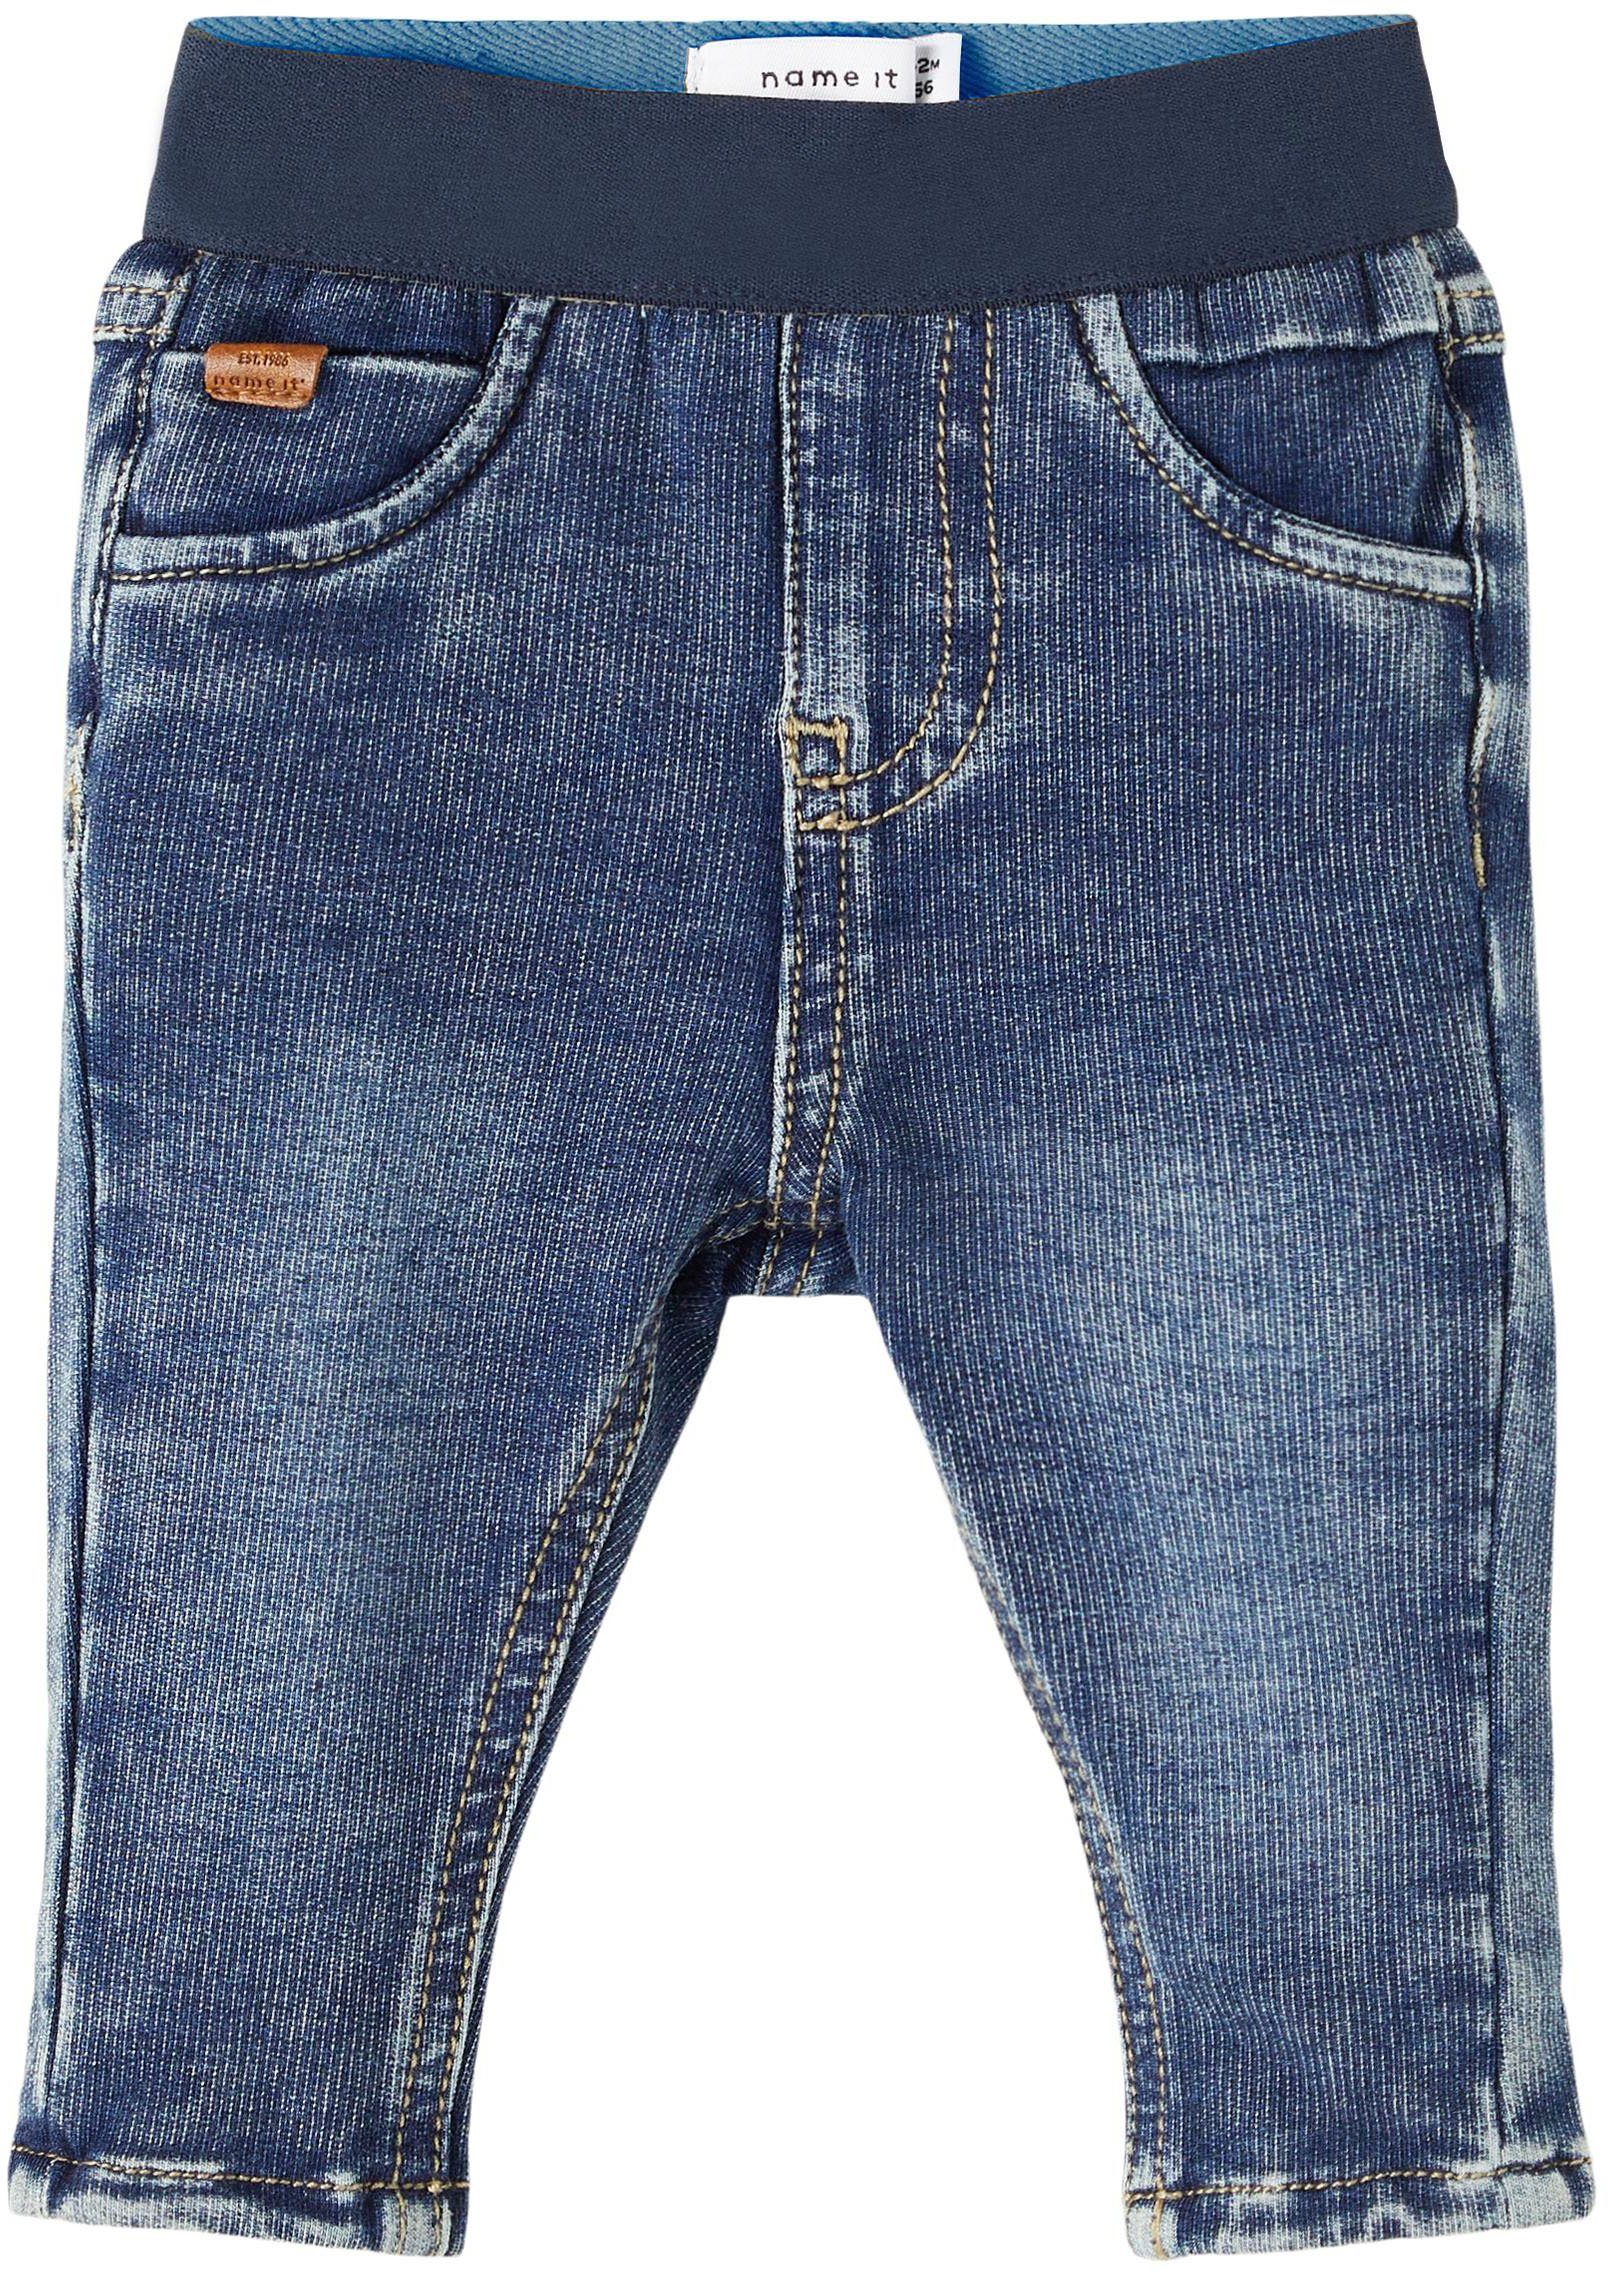 Günstige Jungen Jeans online kaufen » Reduziert im SALE | OTTO